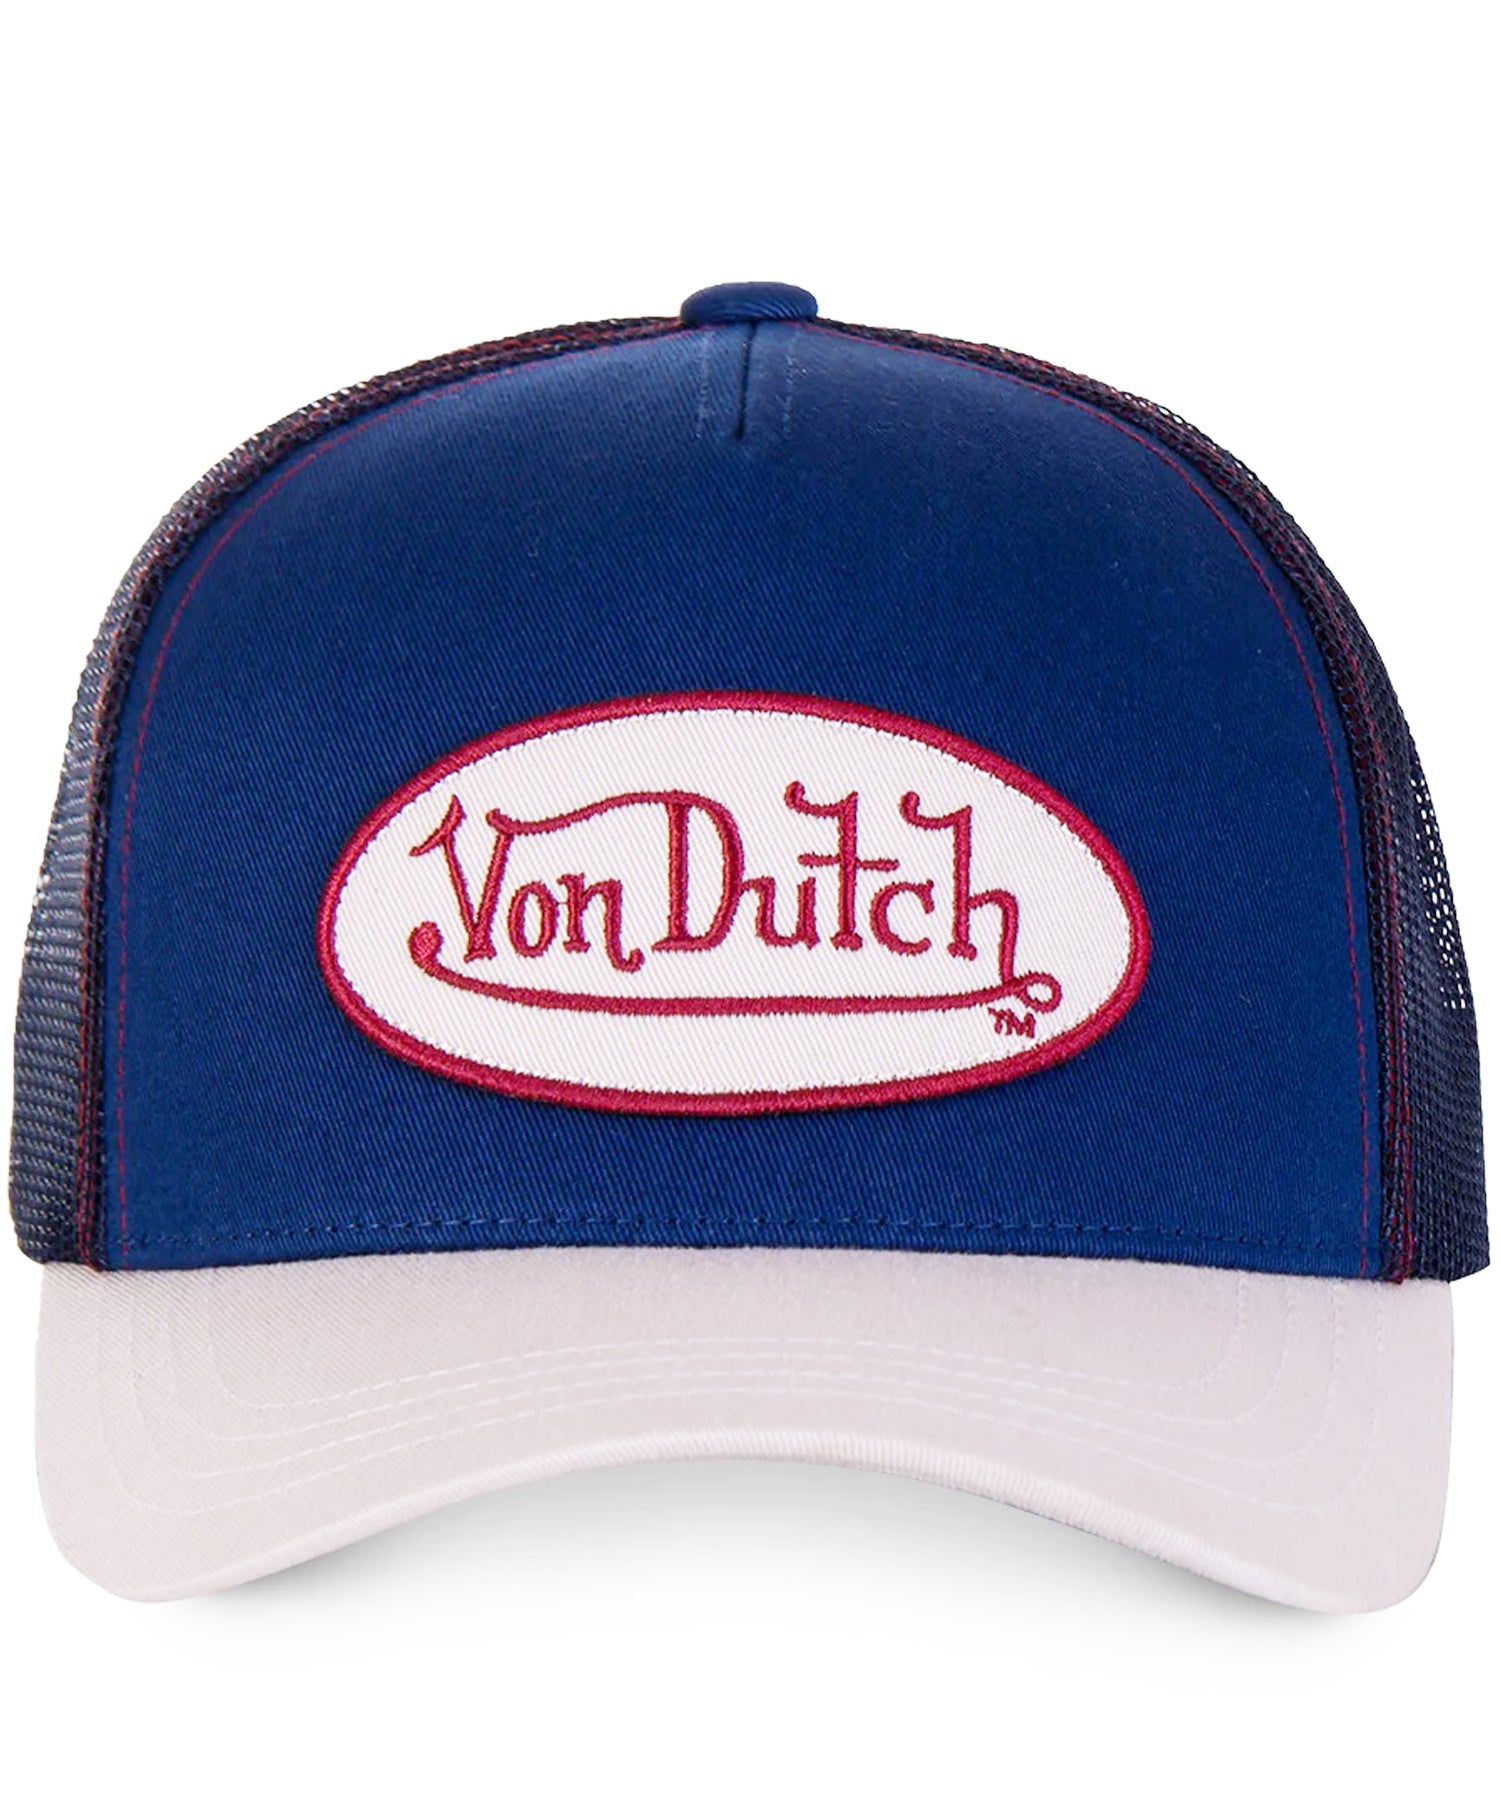 gorra-von-dutch-tipo-trucker-col-cre-color-azul-y-blanco-visera-curva-ajustable-loo-von-dutch-en-el-frente